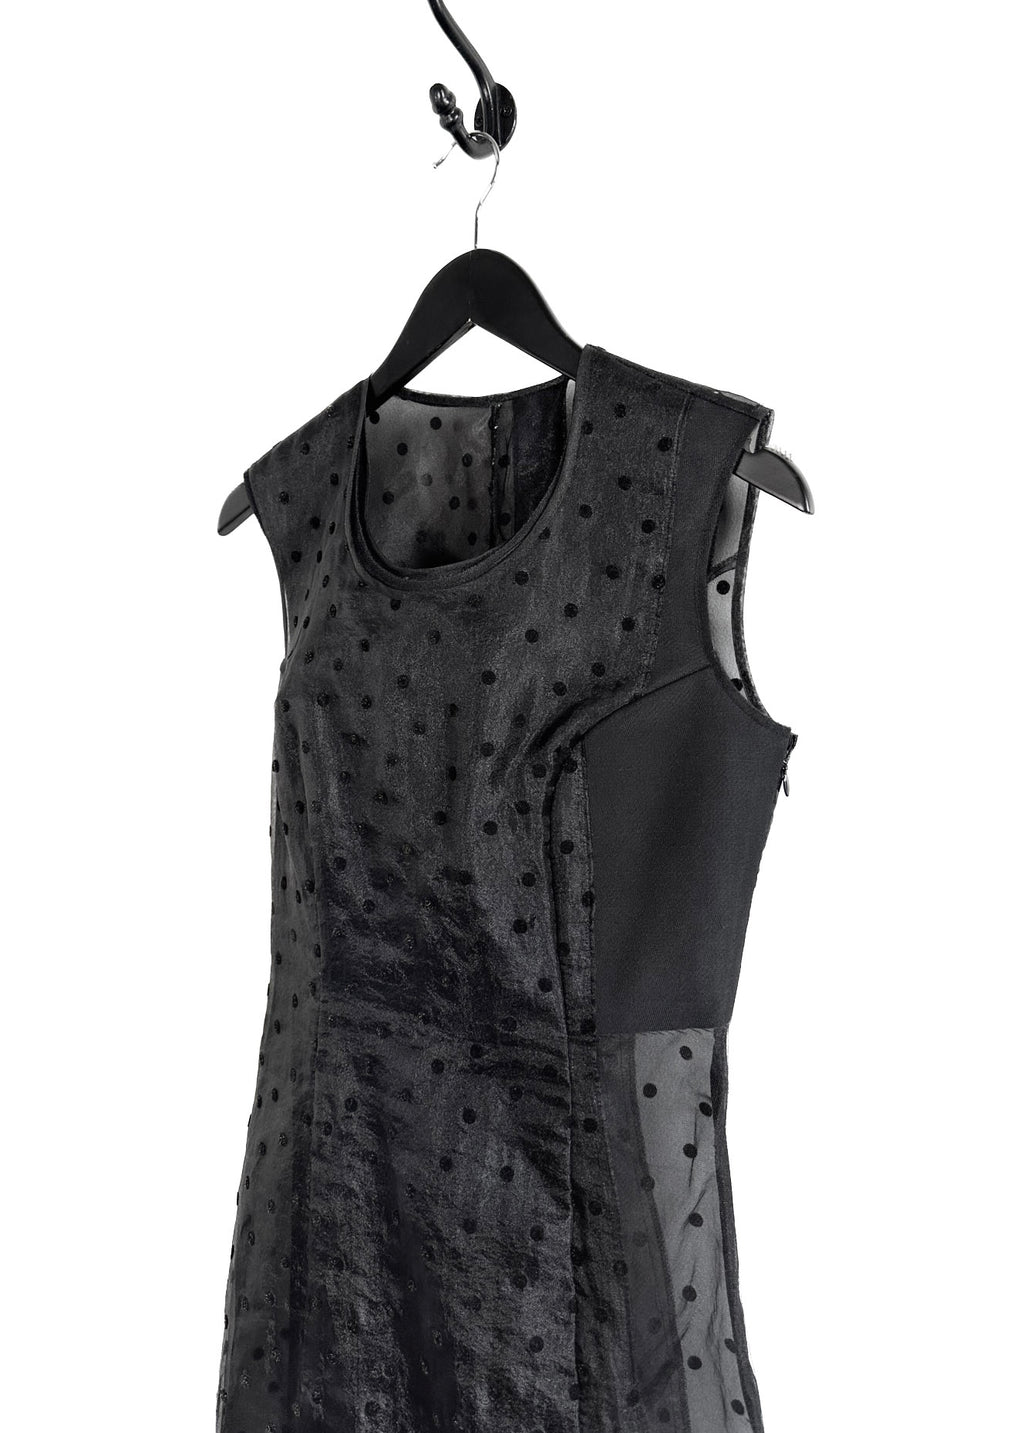 Comme Des Garçons Vintage 1997 Black Polka Dot Panel Sheer Dress